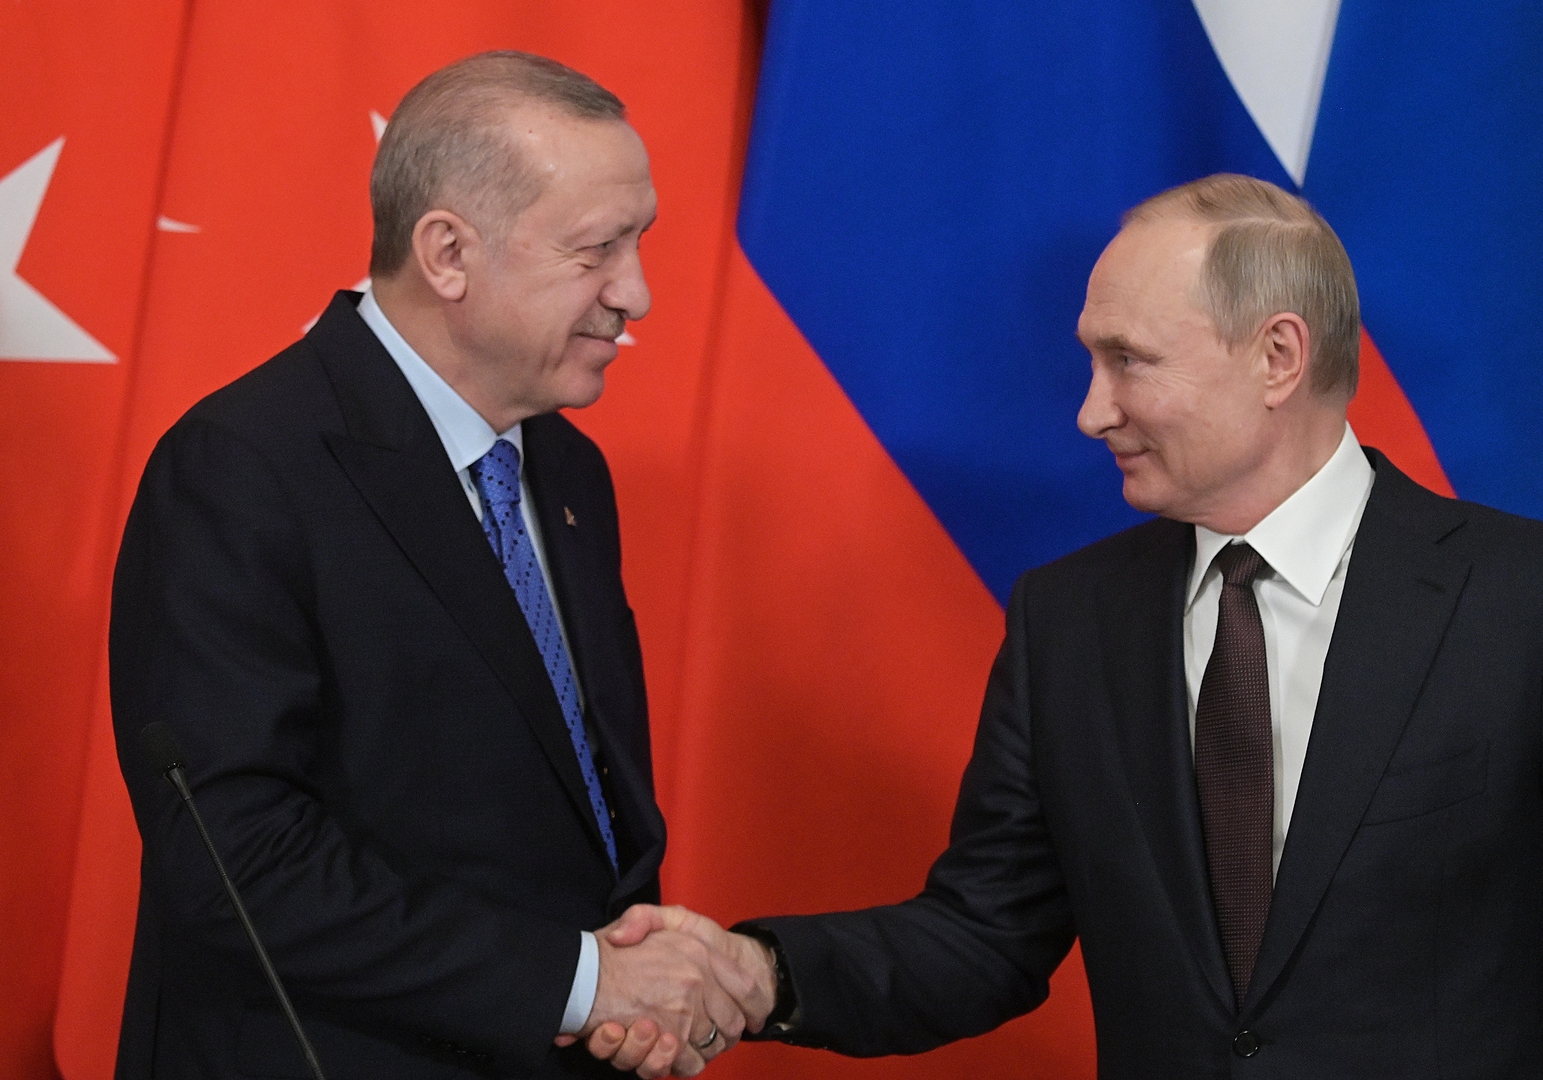 أردوغان عن لقاء قادم مع بوتين: سنبحث ما حققناه في سوريا وسنتخذ قرارا هاما